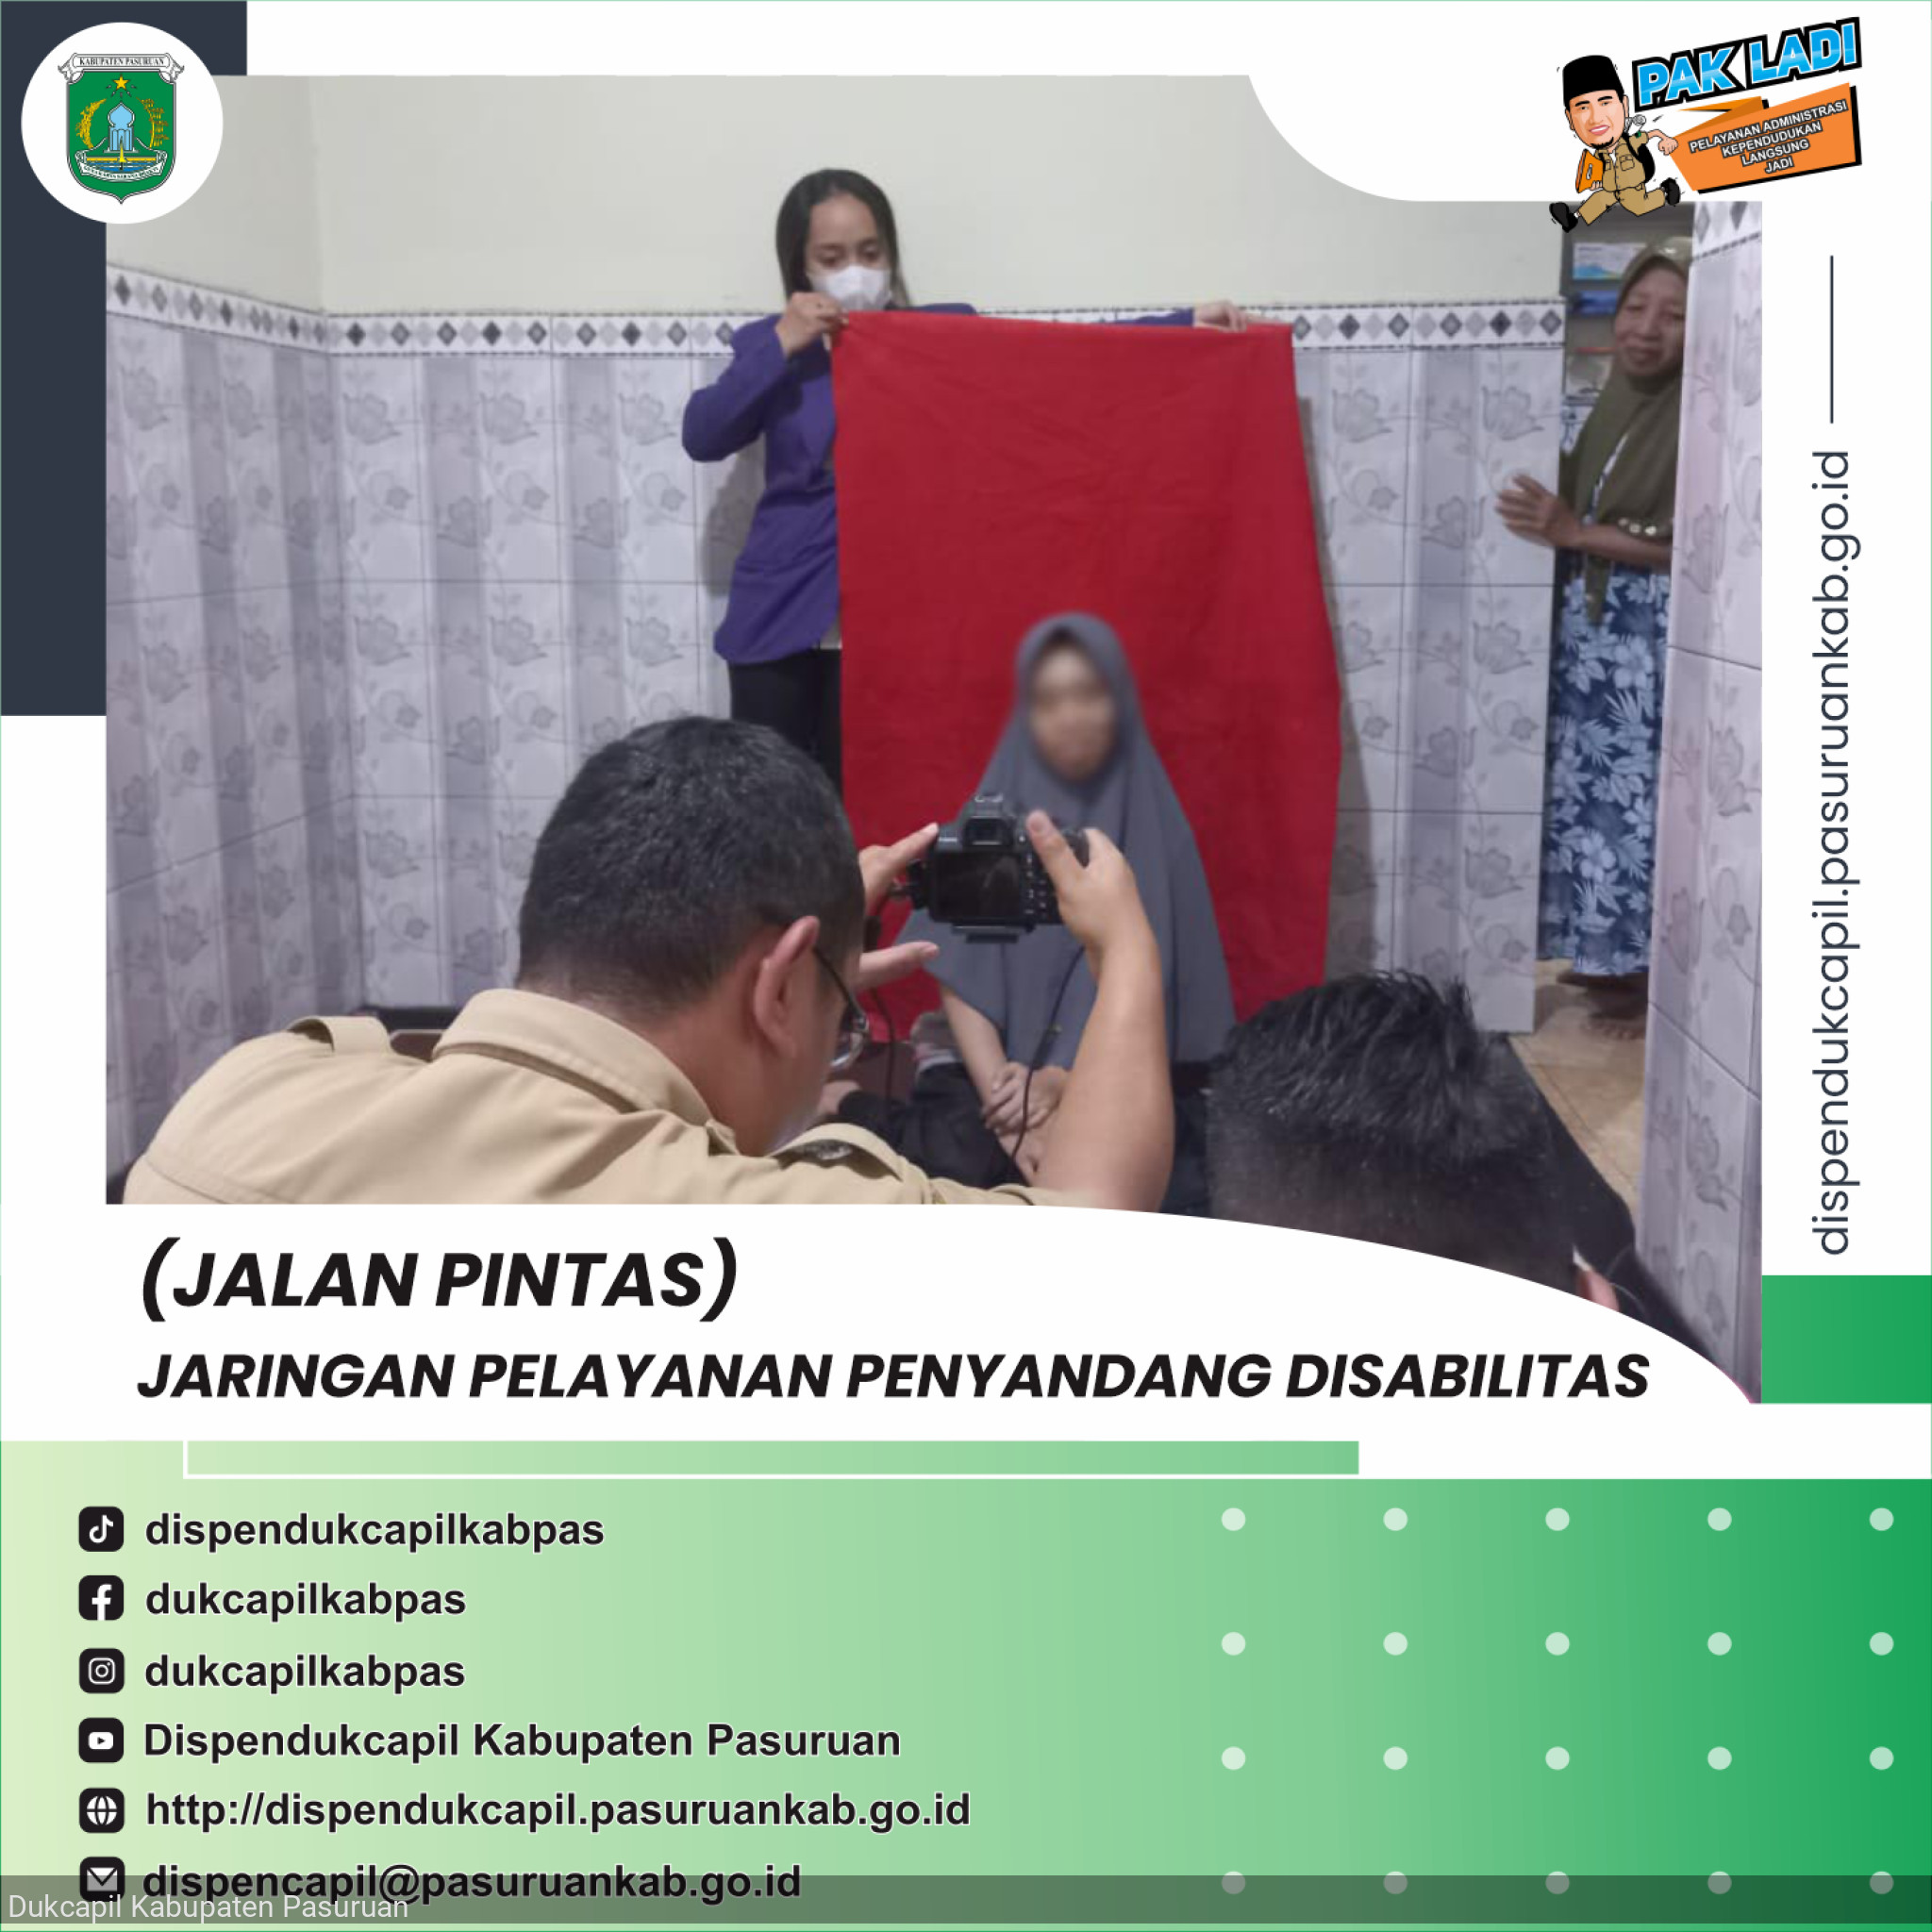 (JALAN PINTAS) Jaringan Pelayanan penyandang disabilitas di Dusun Karangbangkal Kabupaten Pasuruan